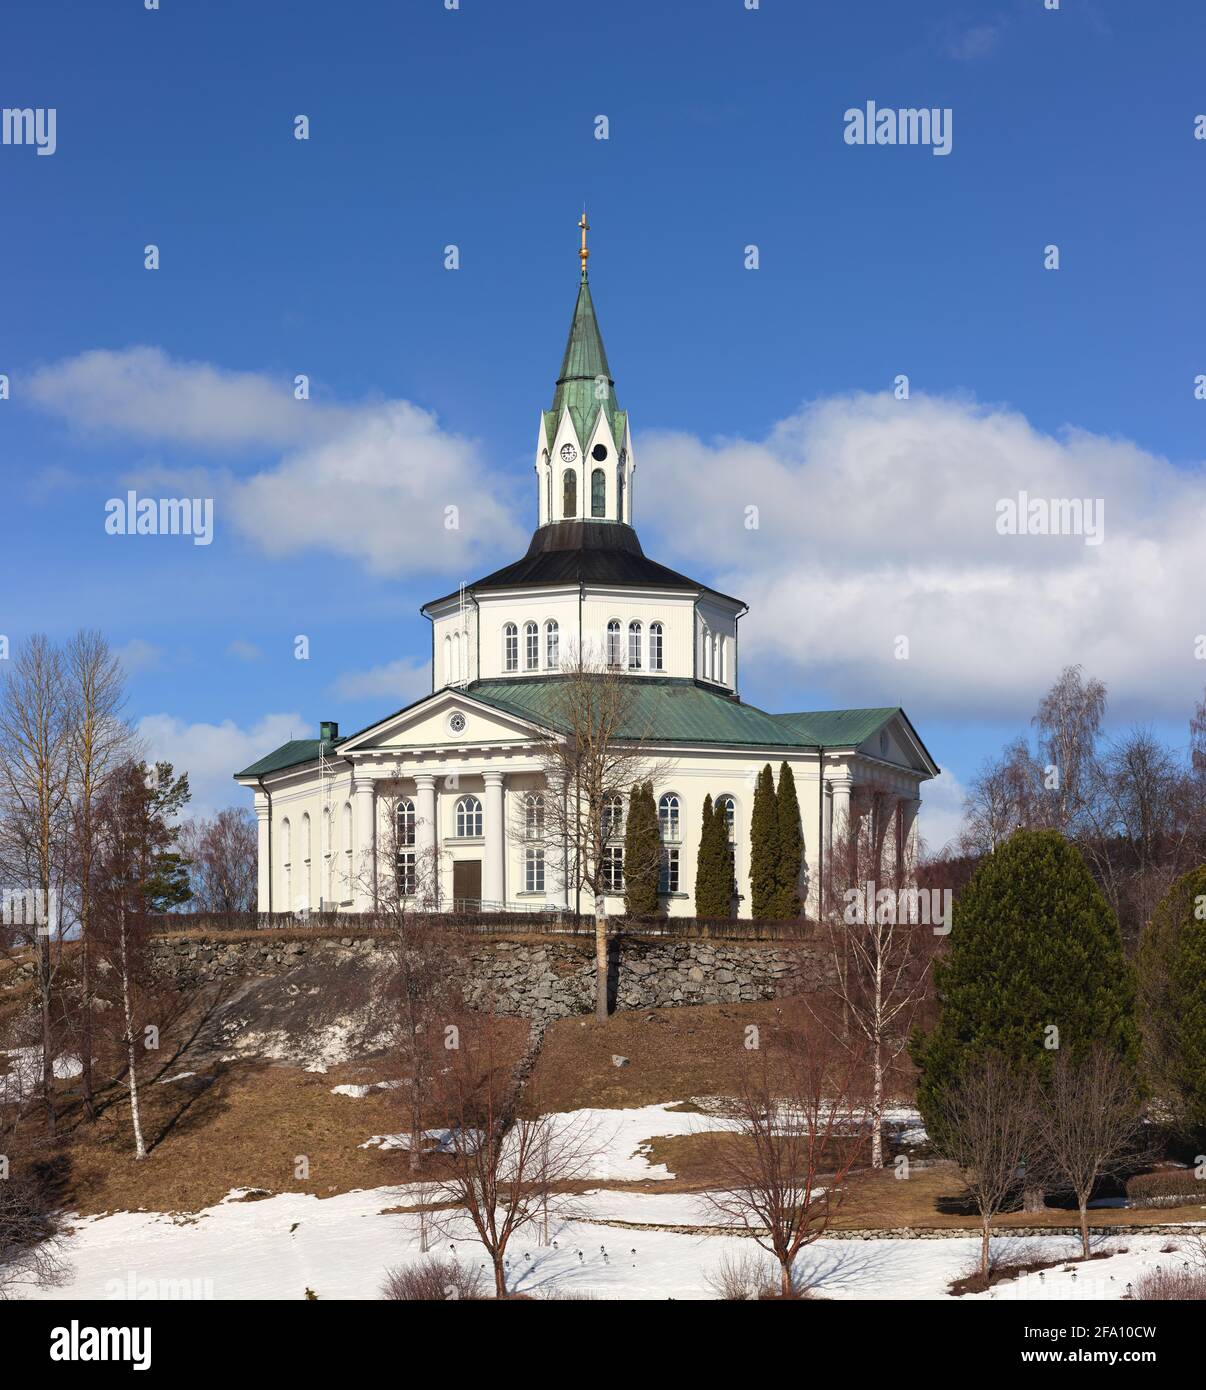 Själevads kyrka (iglesia de Själevad) cerca de Örnsköldsvik, Suecia Foto de stock